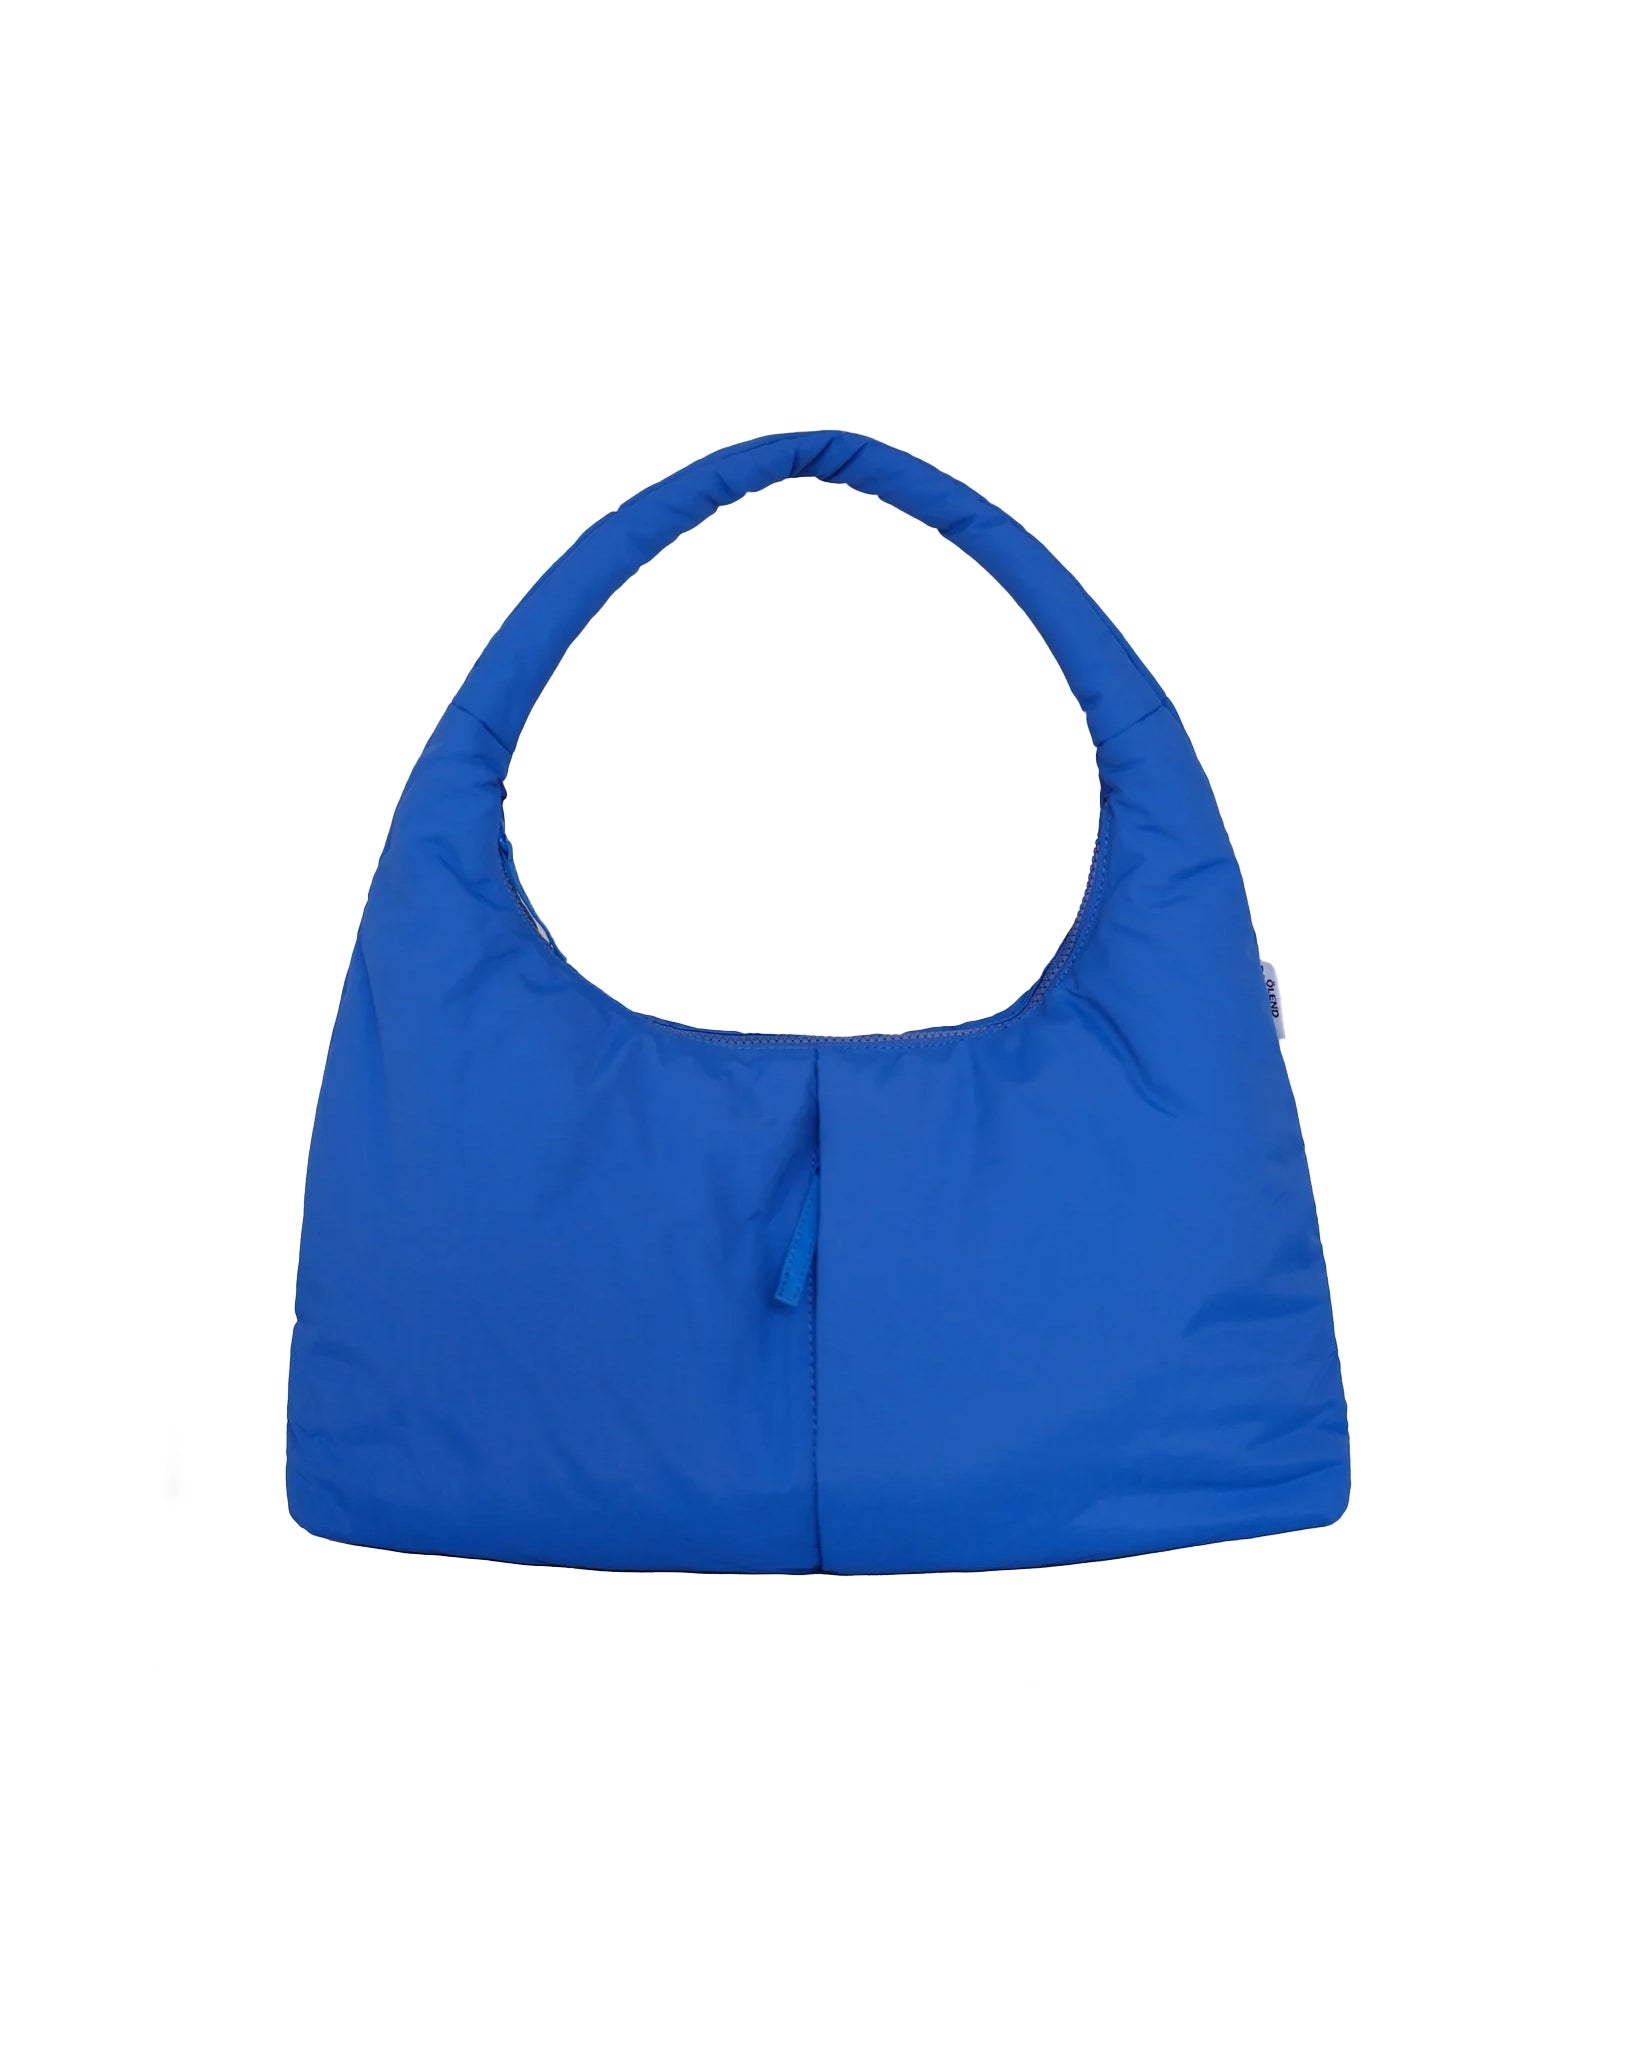 Nico bag - Cobalt blue